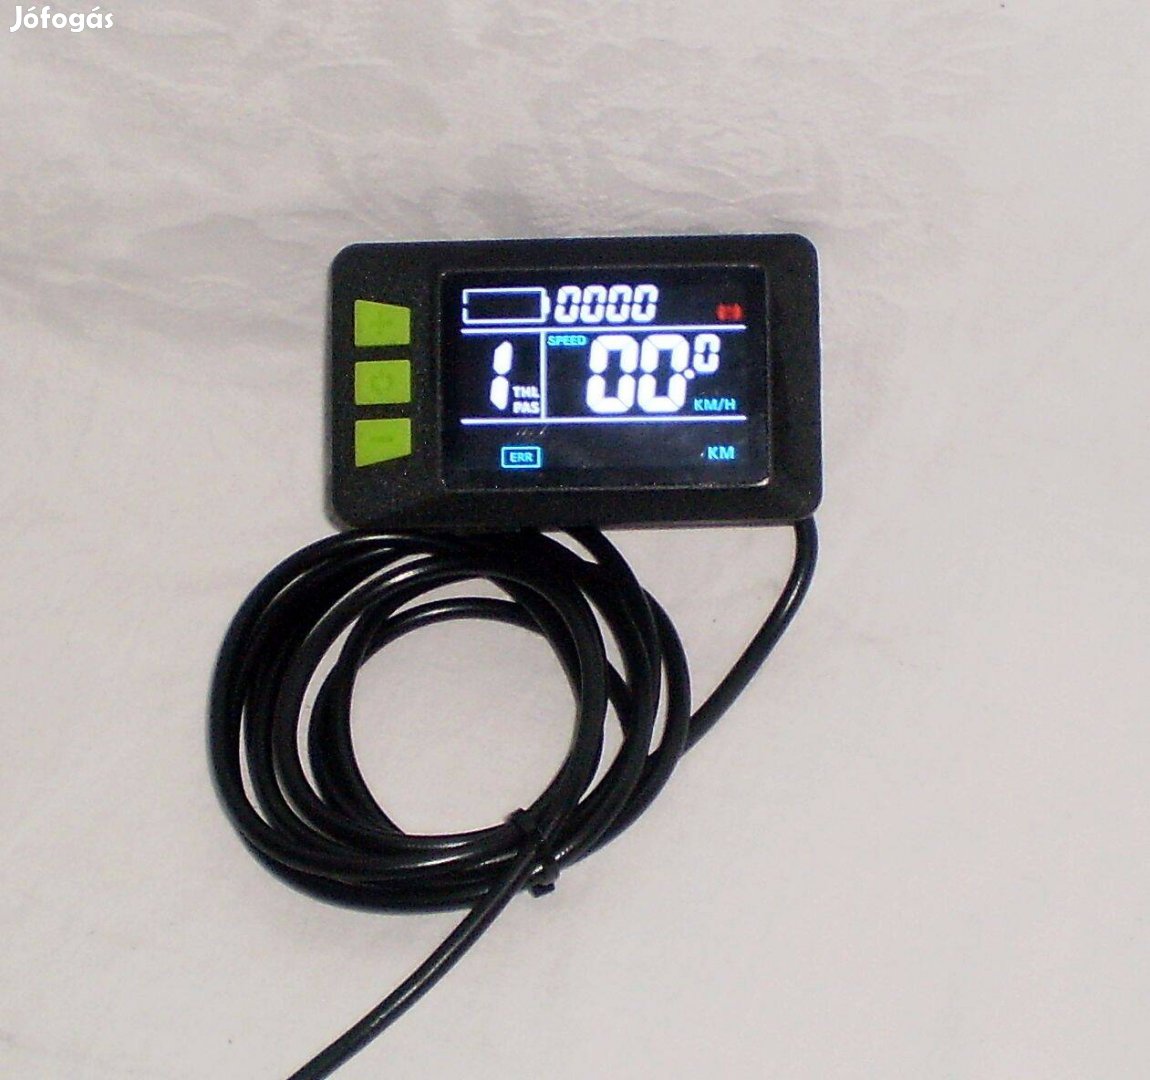 Focan tipusú vezérlőhöz LCD kezelő elektromos kerékpárra